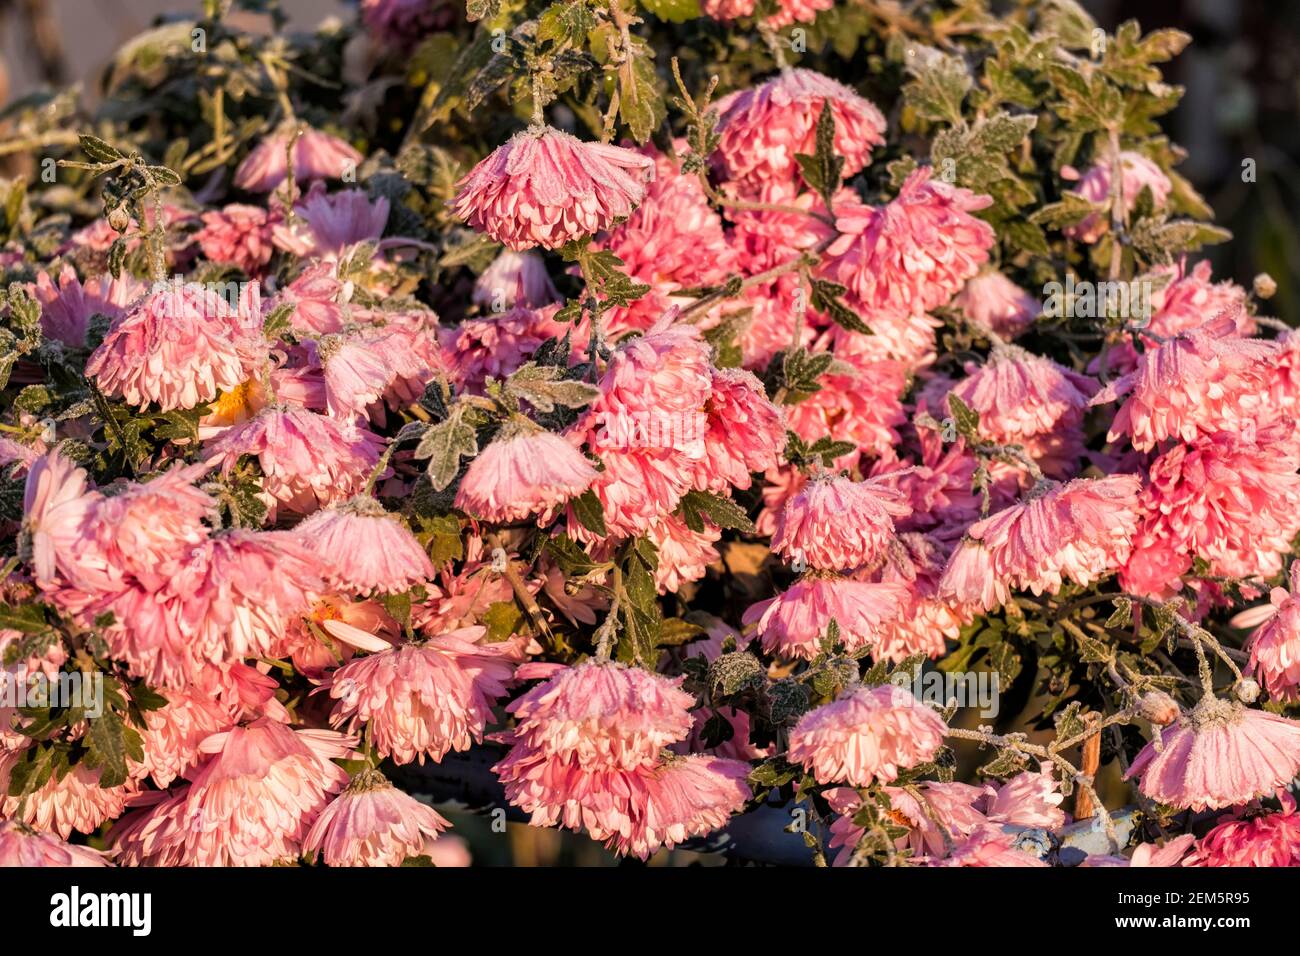 Frosty pink chrysanthemums (Chrysanthemum morifolium) Stock Photo